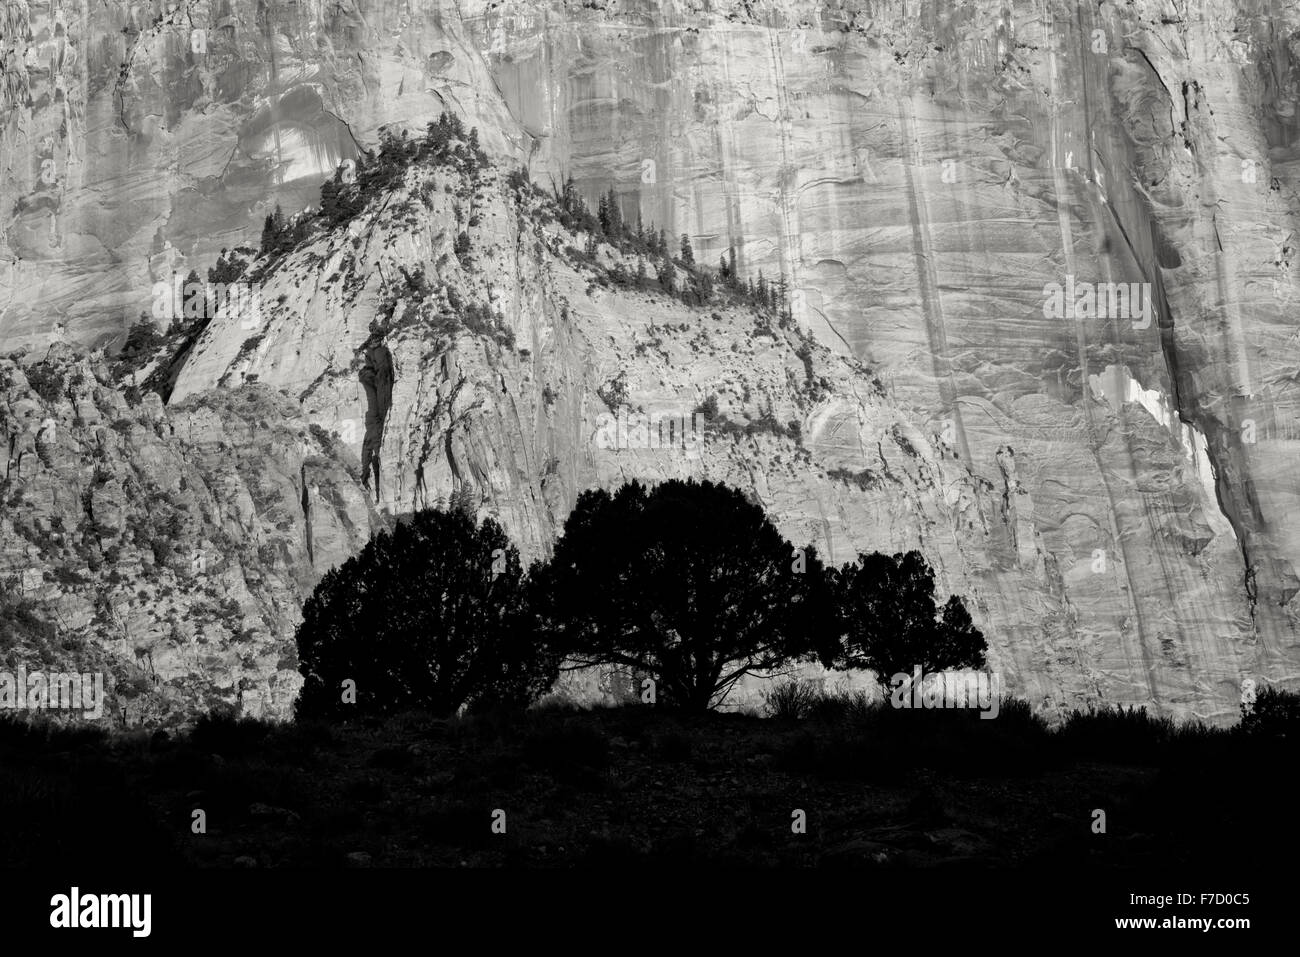 Stagliano alberi e il tempio e le torri della Vergine. Parco Nazionale di Zion, Utah Foto Stock